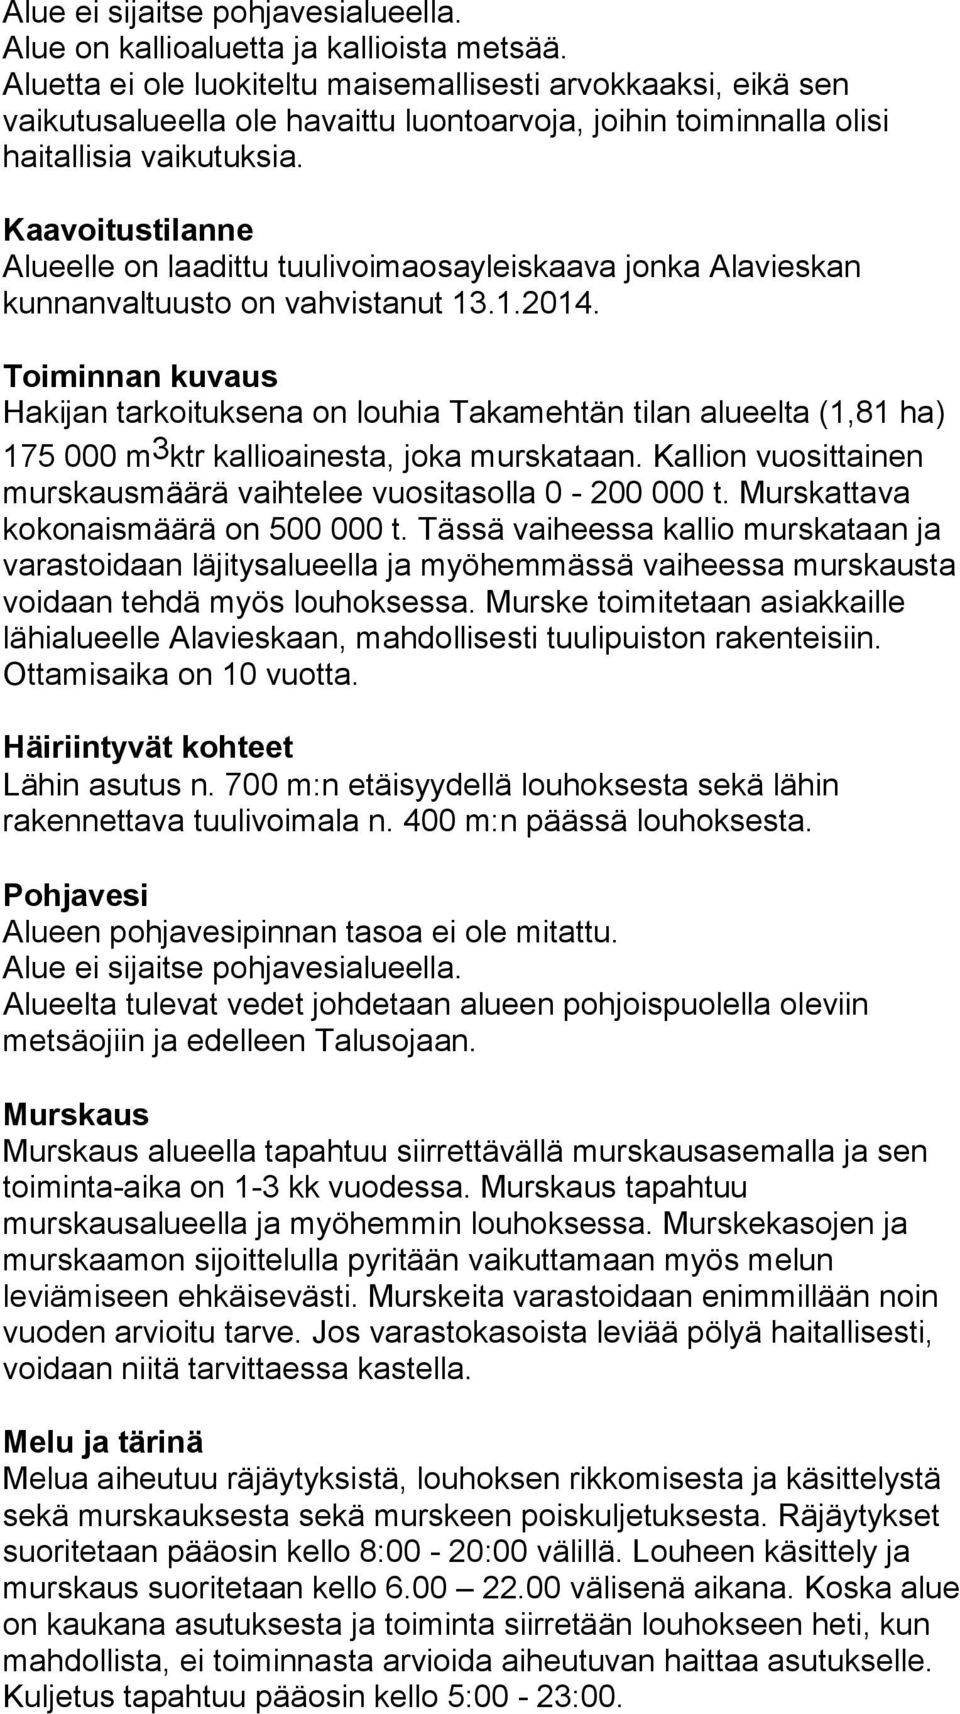 Kaavoitustilanne Alueelle on laadittu tuulivoimaosayleiskaava jonka Alavieskan kunnanvaltuusto on vahvistanut 13.1.2014.